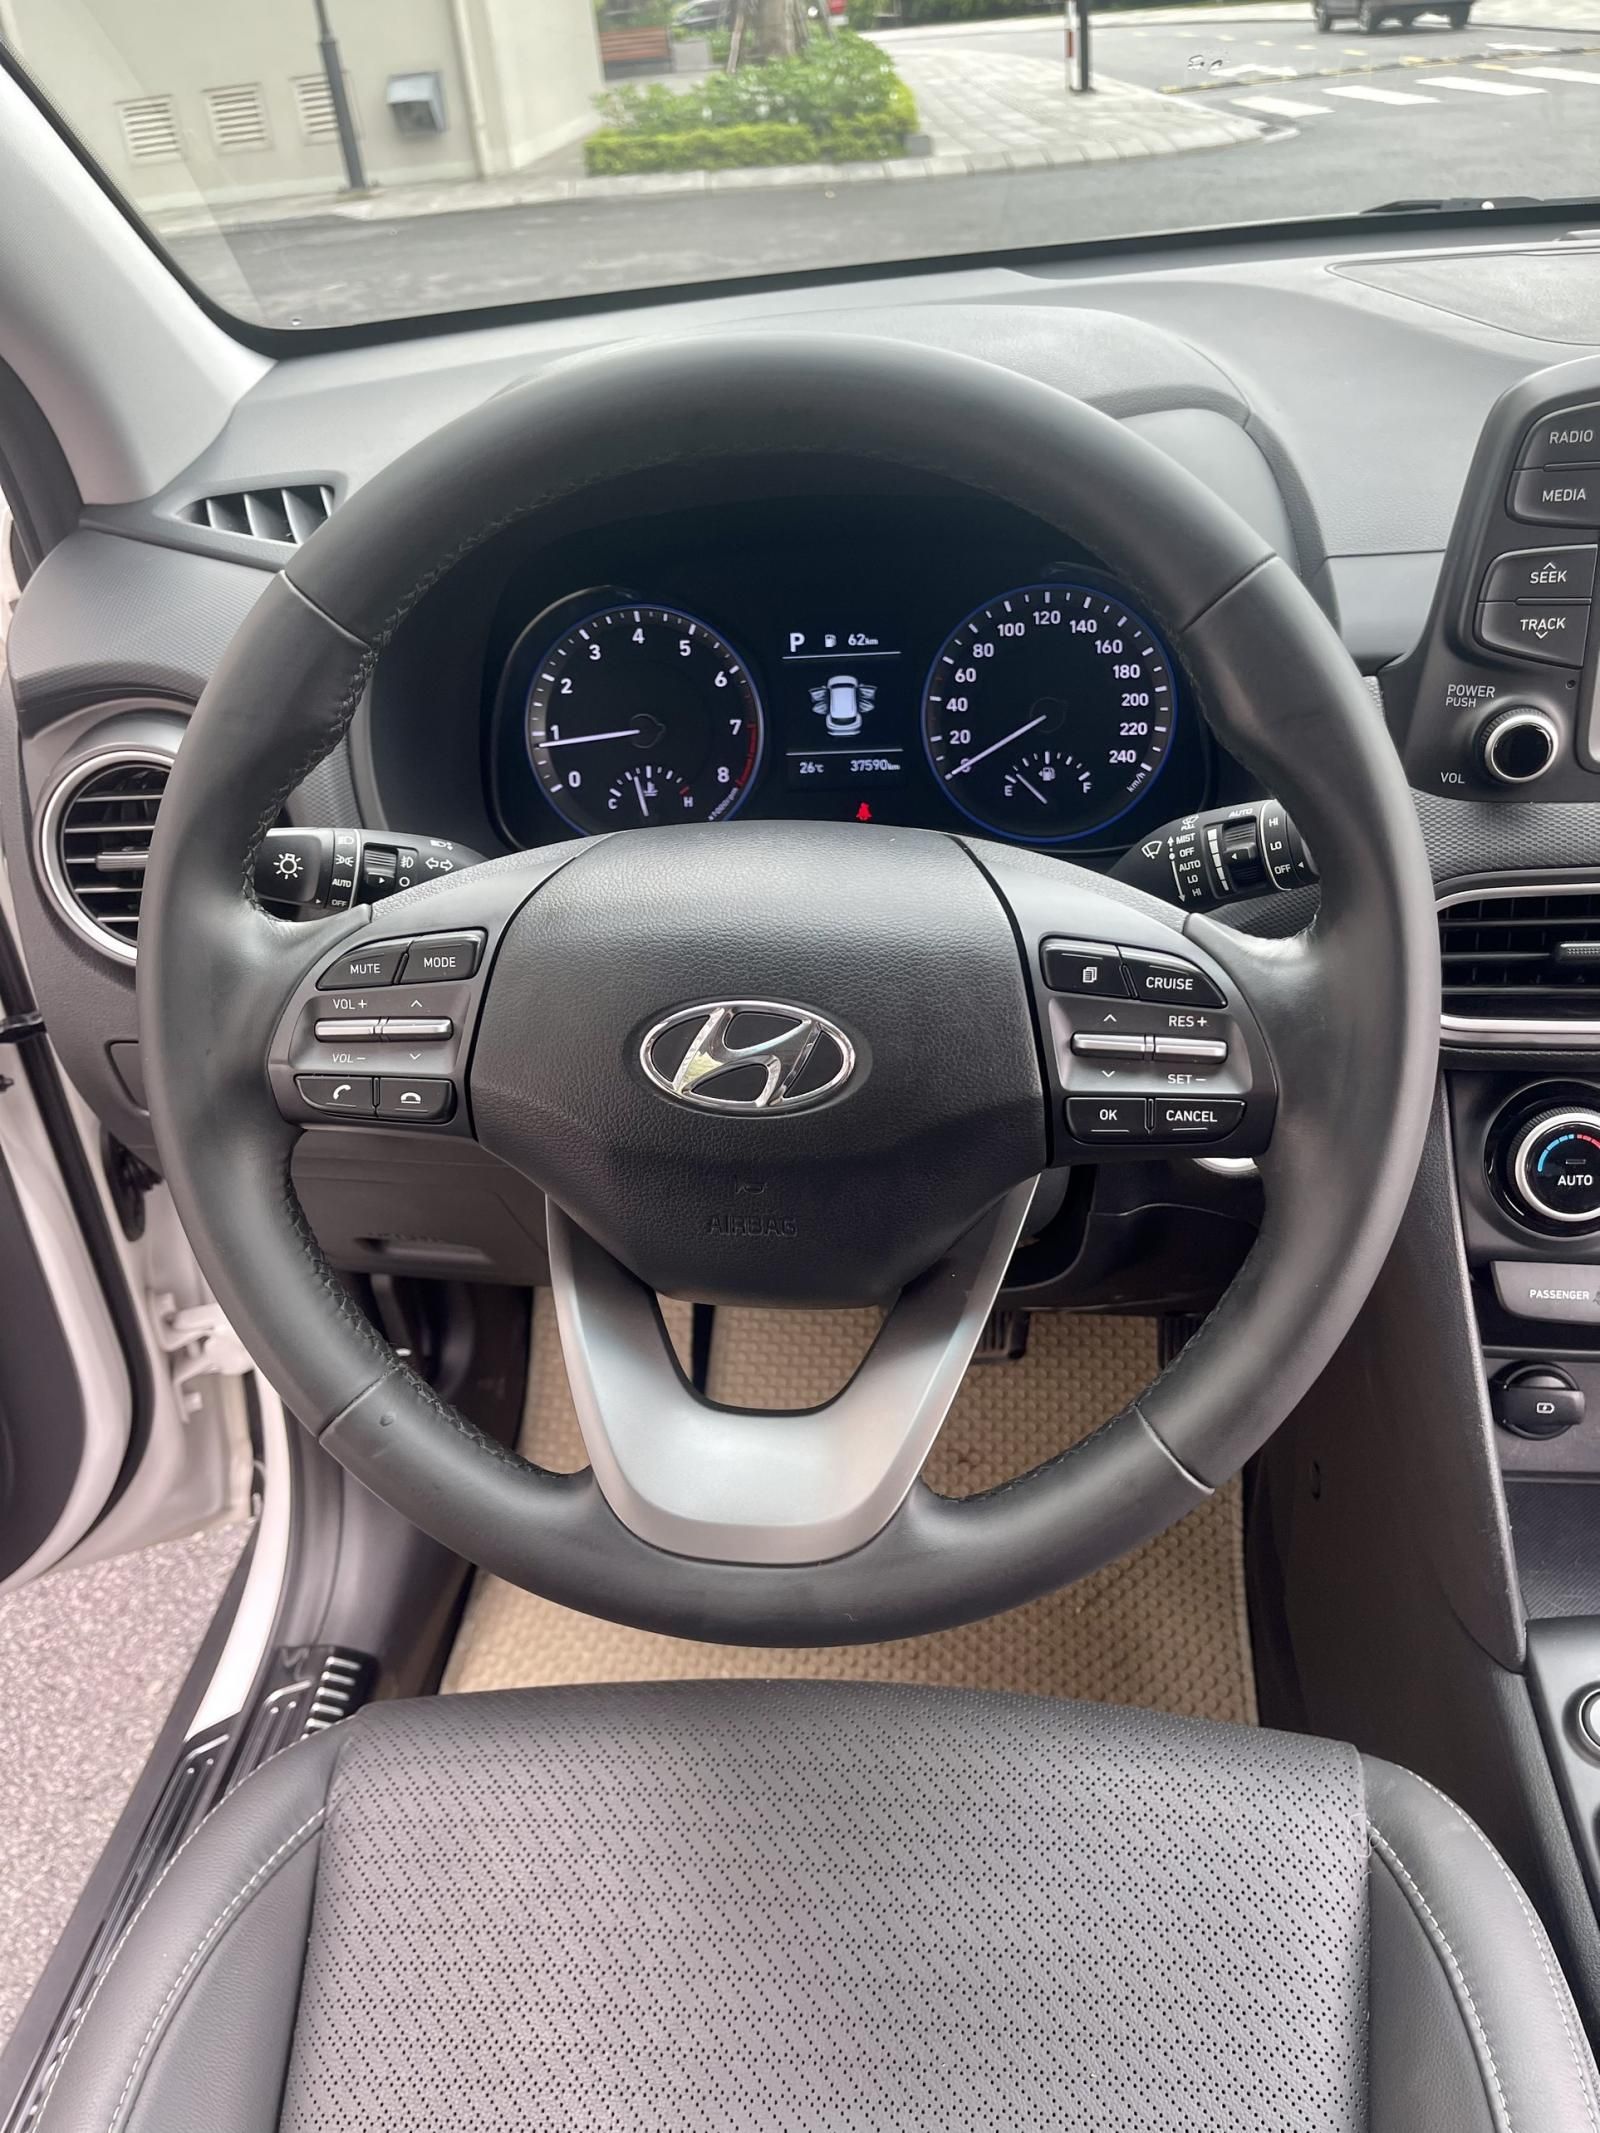 Hyundai Kona 2018 - Tặng gói bảo dưỡng xe 1 năm